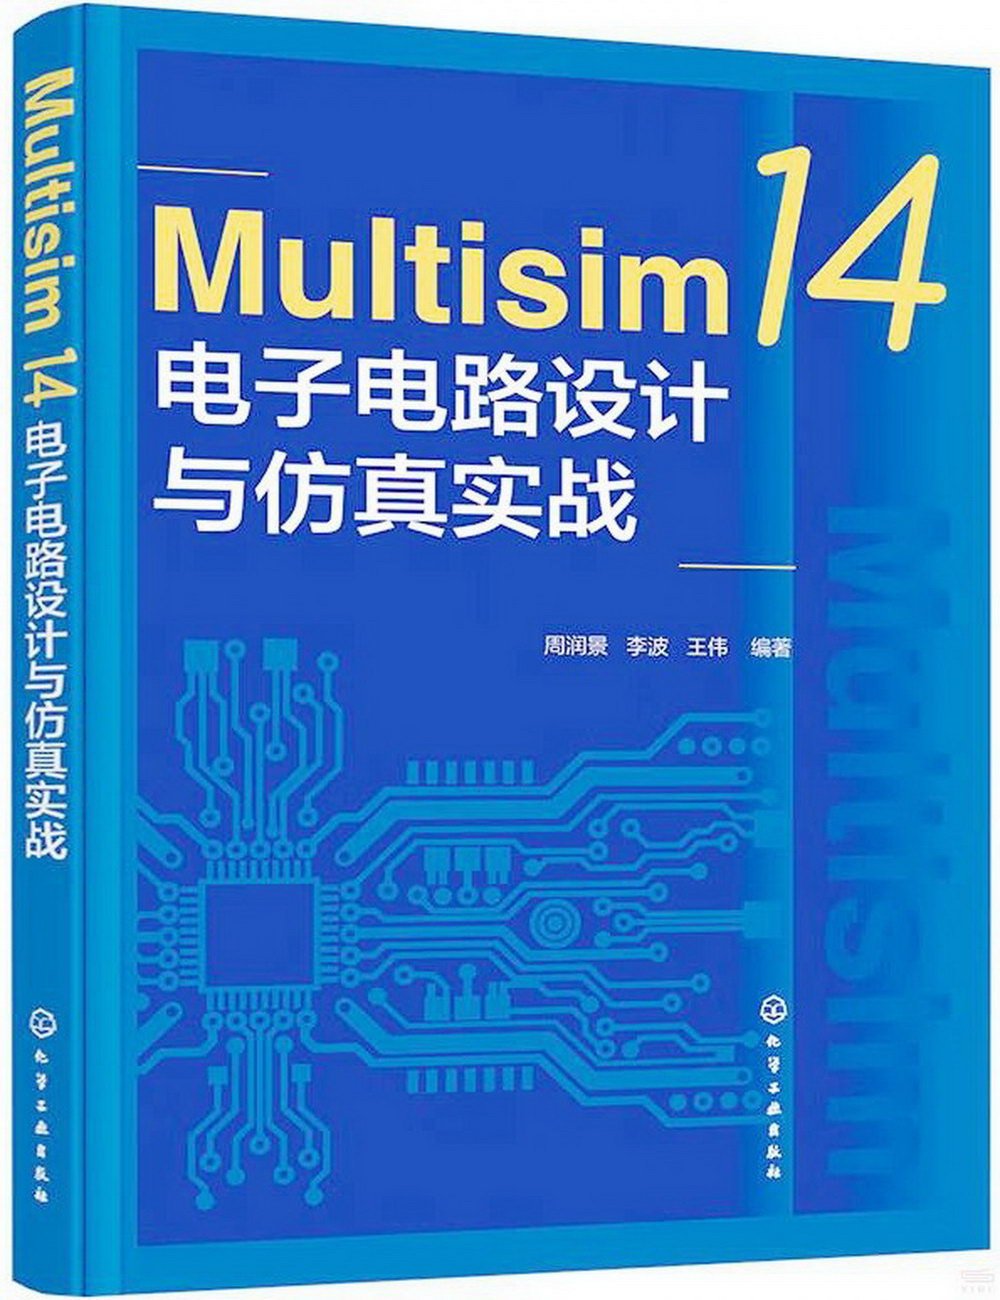 Multisim 14電子電路設計與仿真實戰